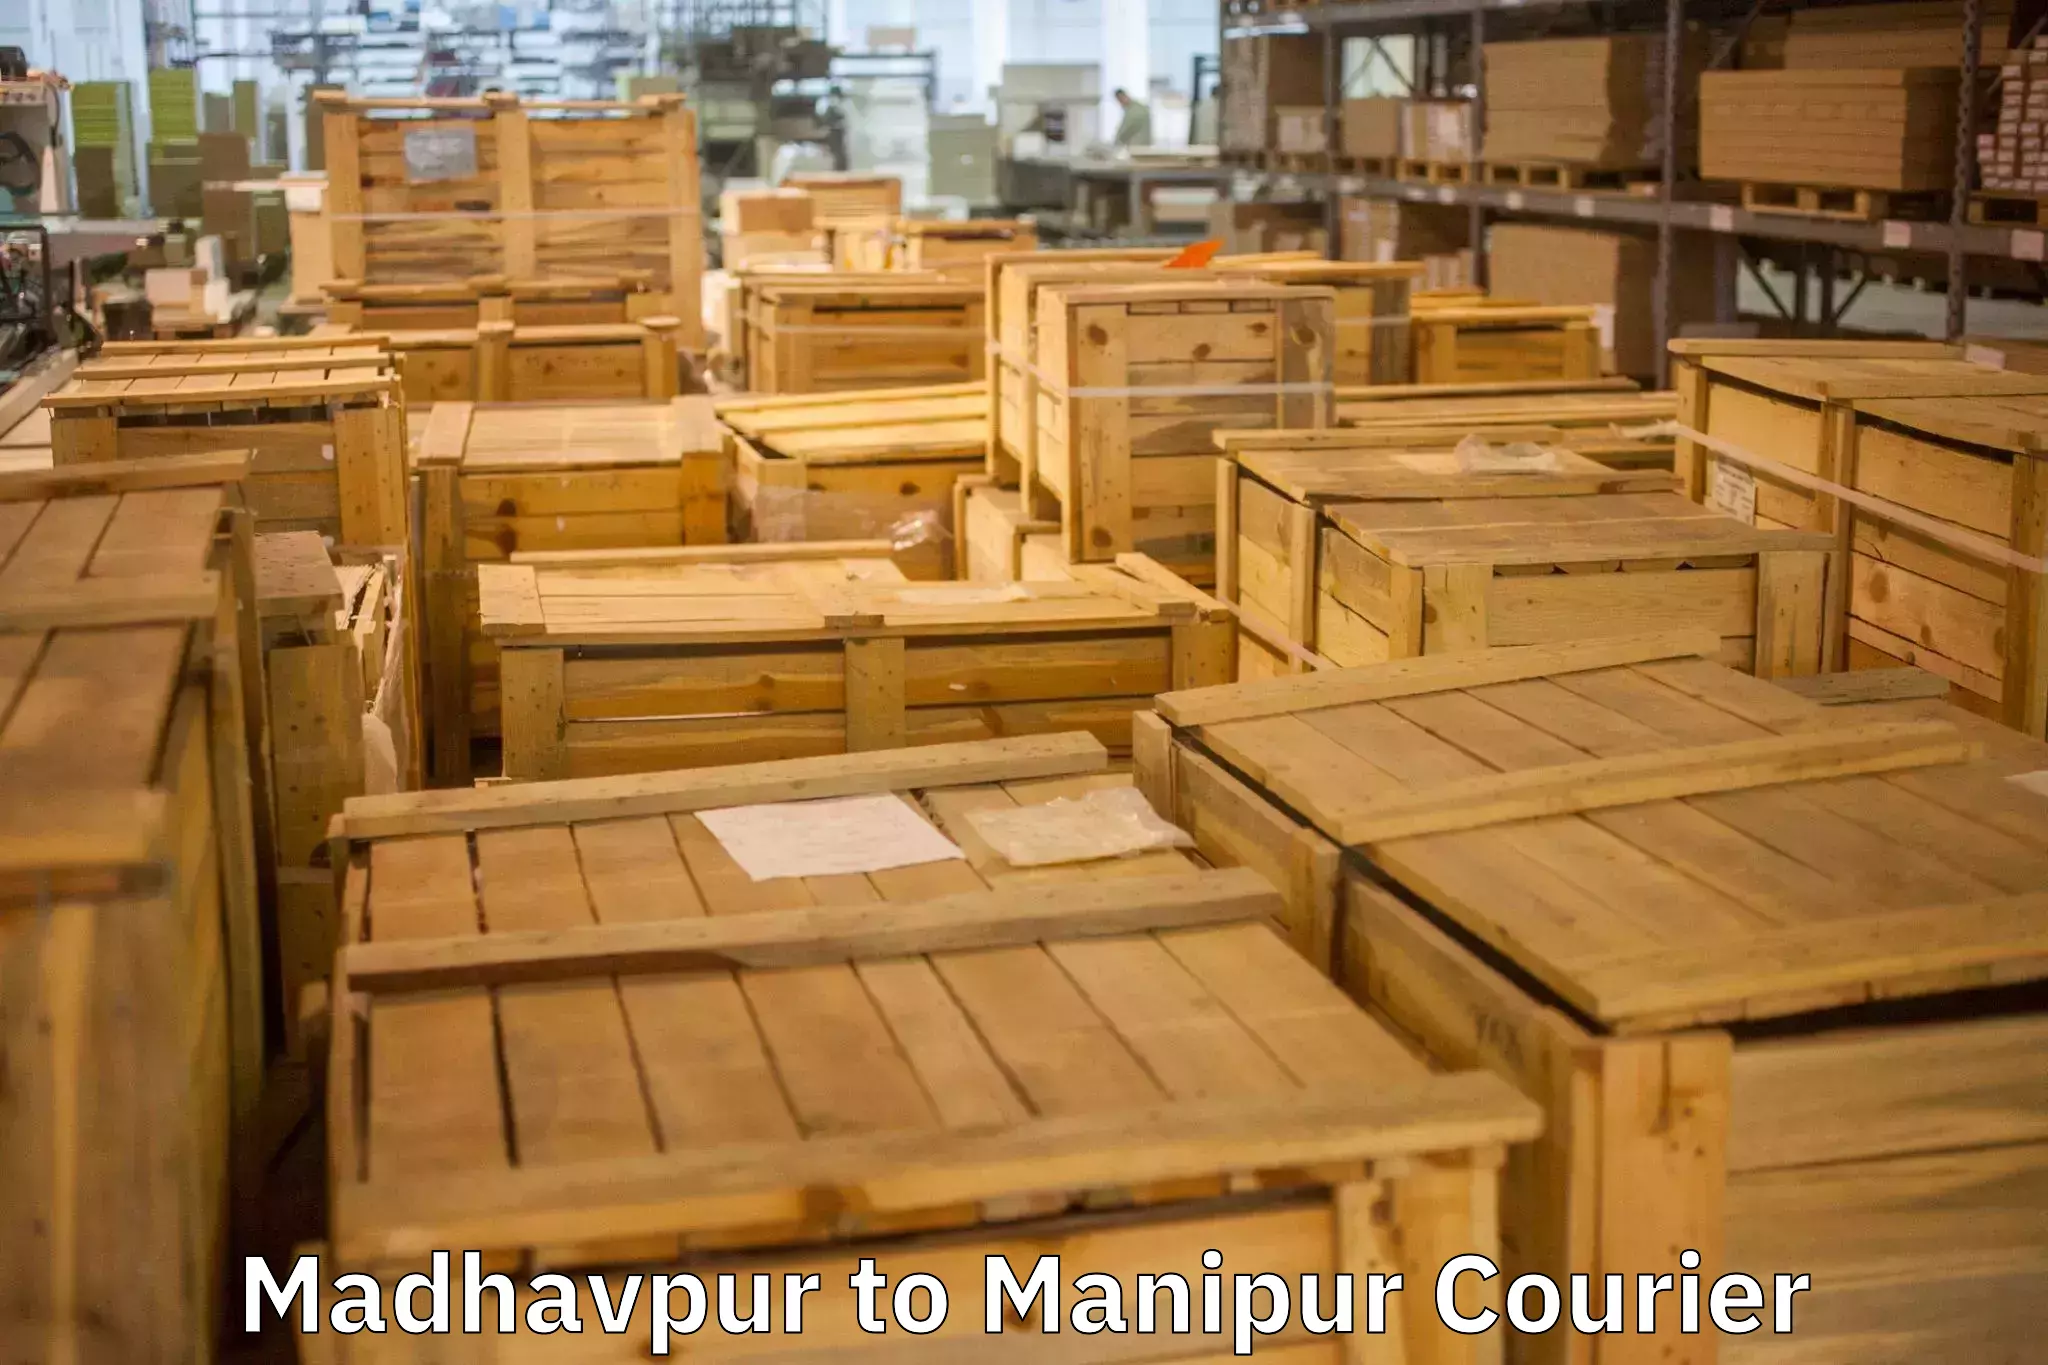 Door-to-door relocation services Madhavpur to Moirang